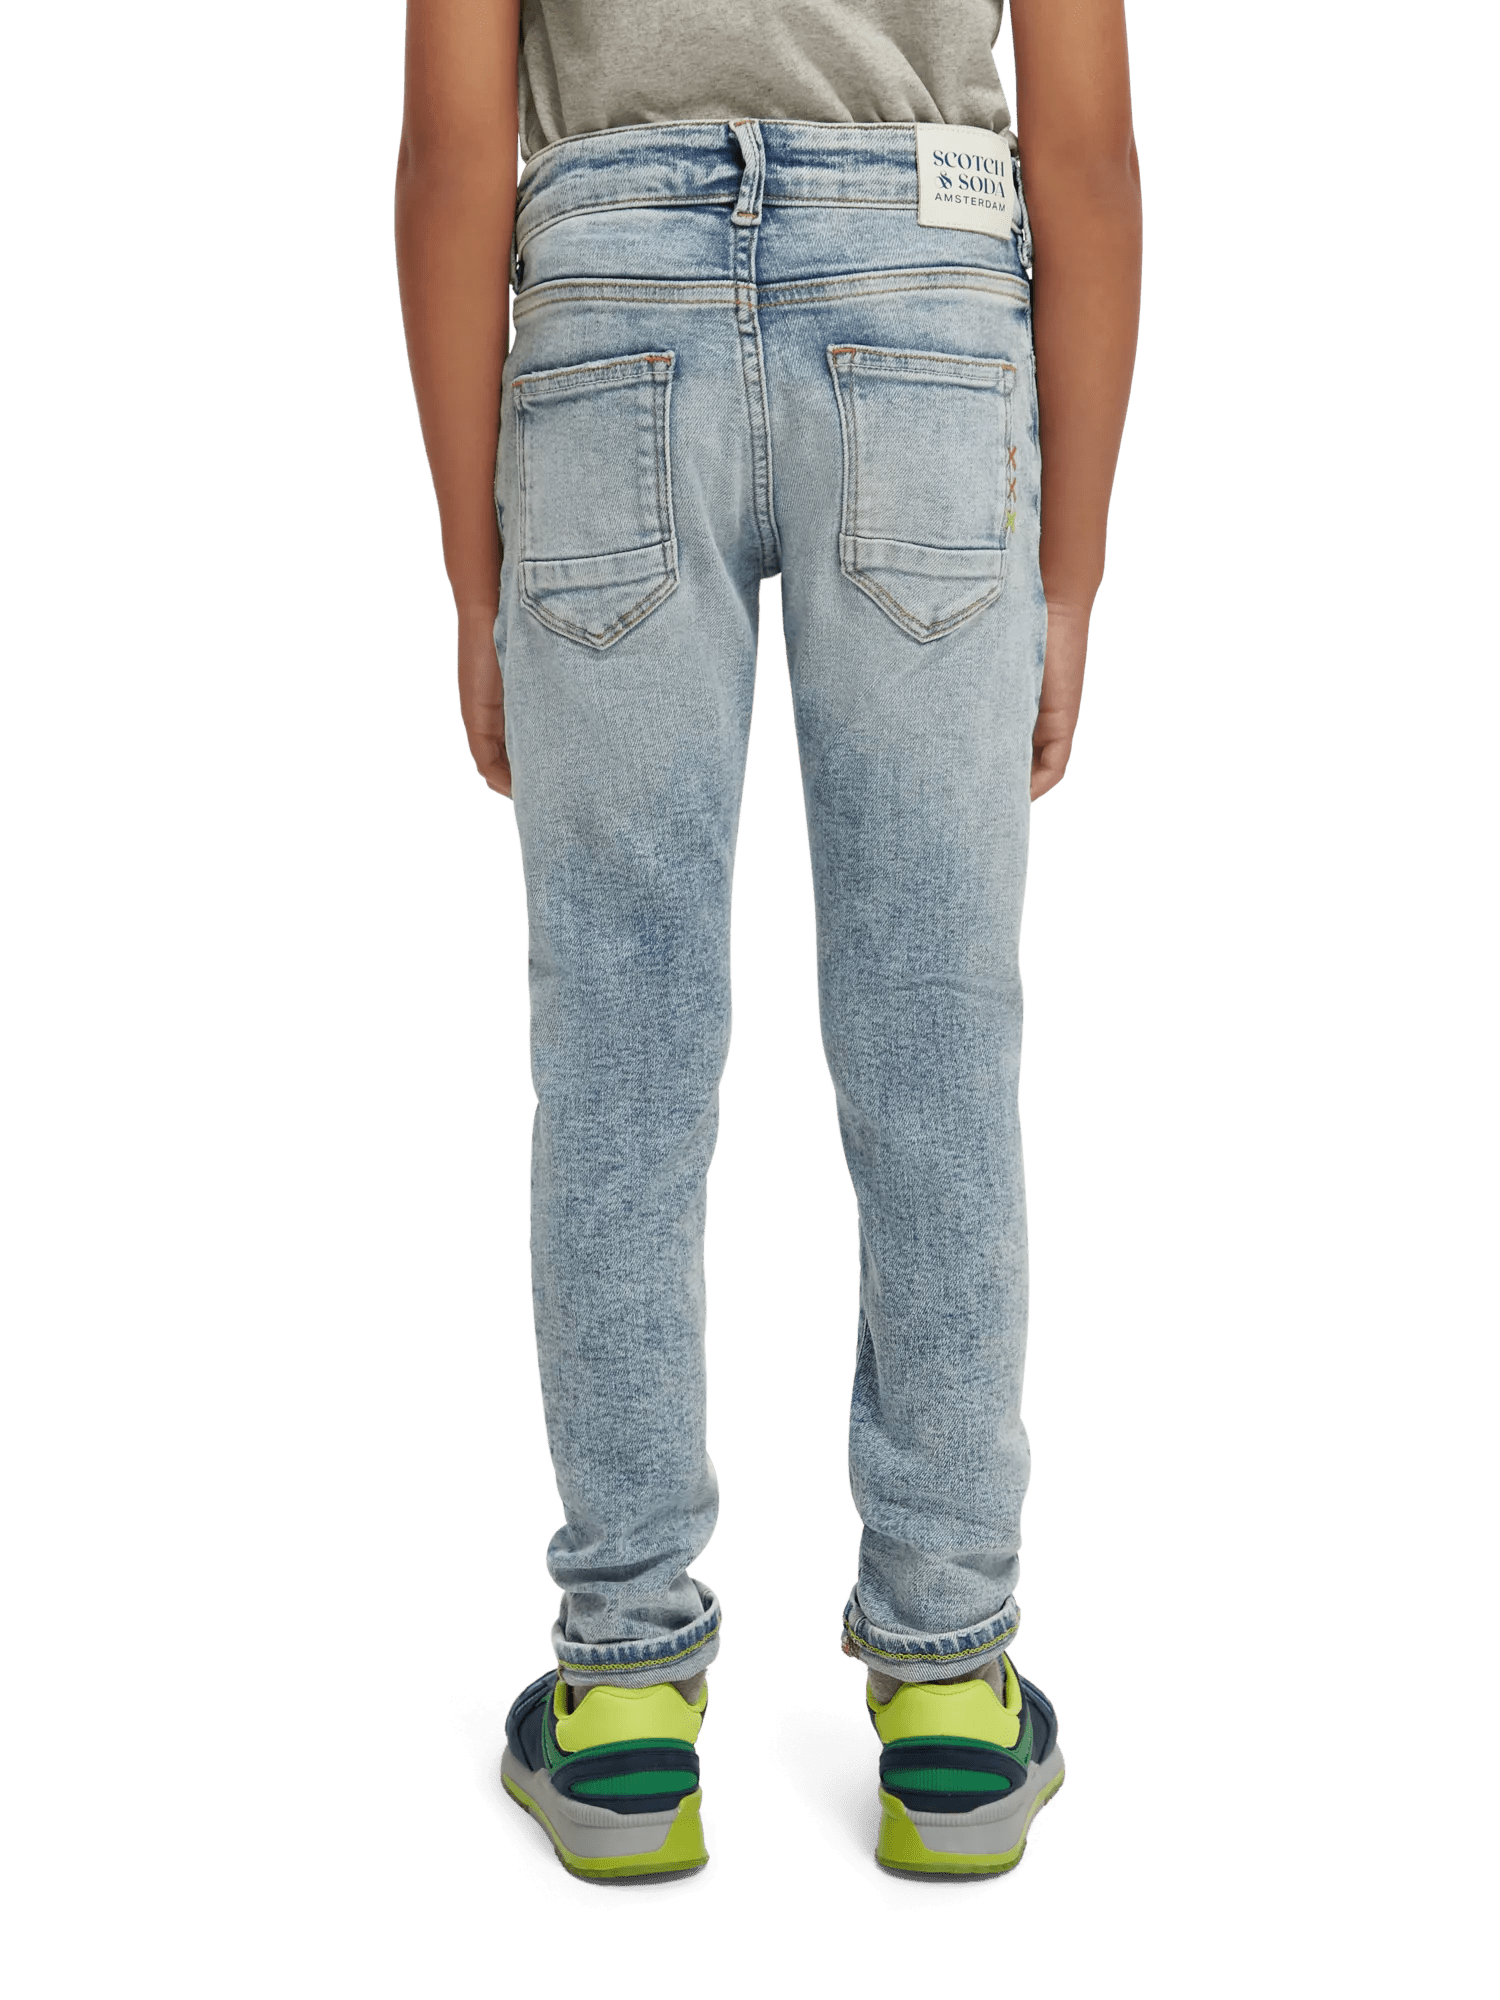 Scotch & Soda Strummer slim fit jeans — Daylight NHD-BCK